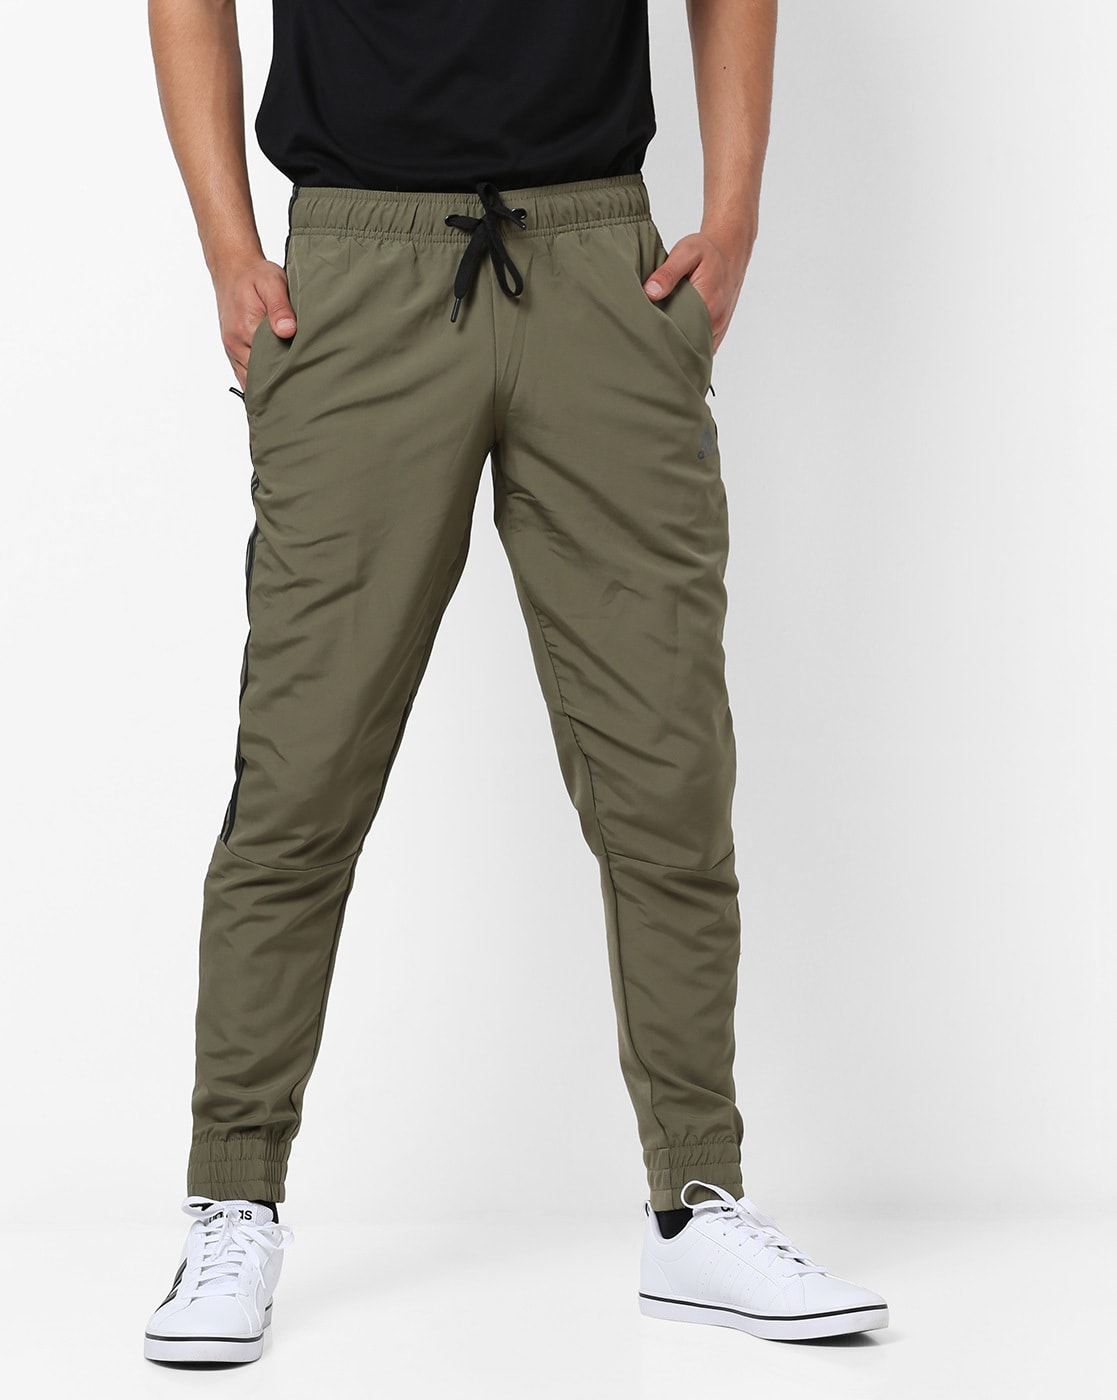 olive green adidas pants mens